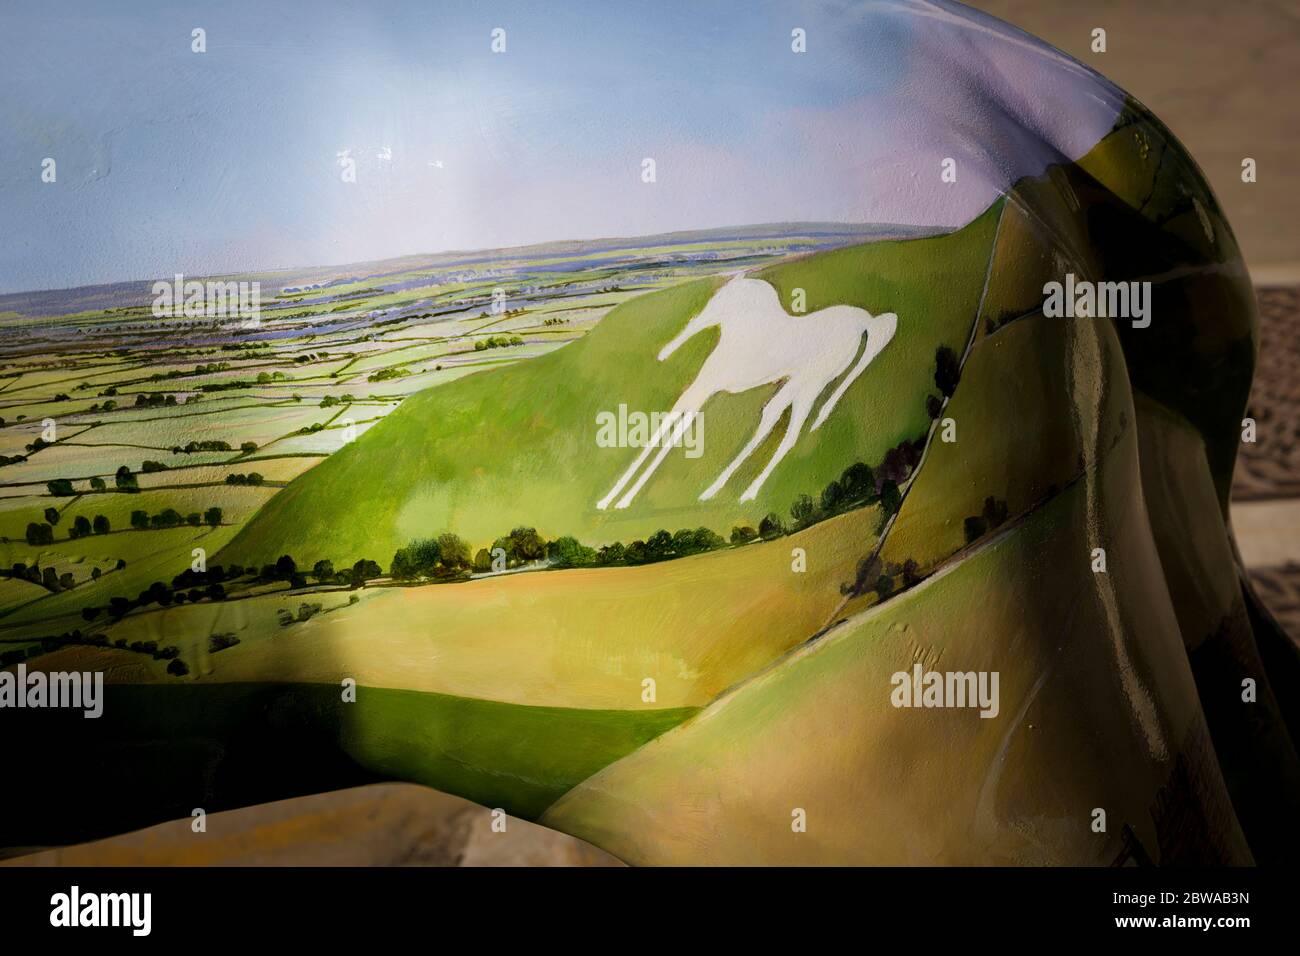 Una zona del paisaje de Wiltshire, incluyendo un característico caballo blanco cortado de chalkland bajs, pintado en el flanco de un león ornamental utilizado para el interés urbano Foto de stock